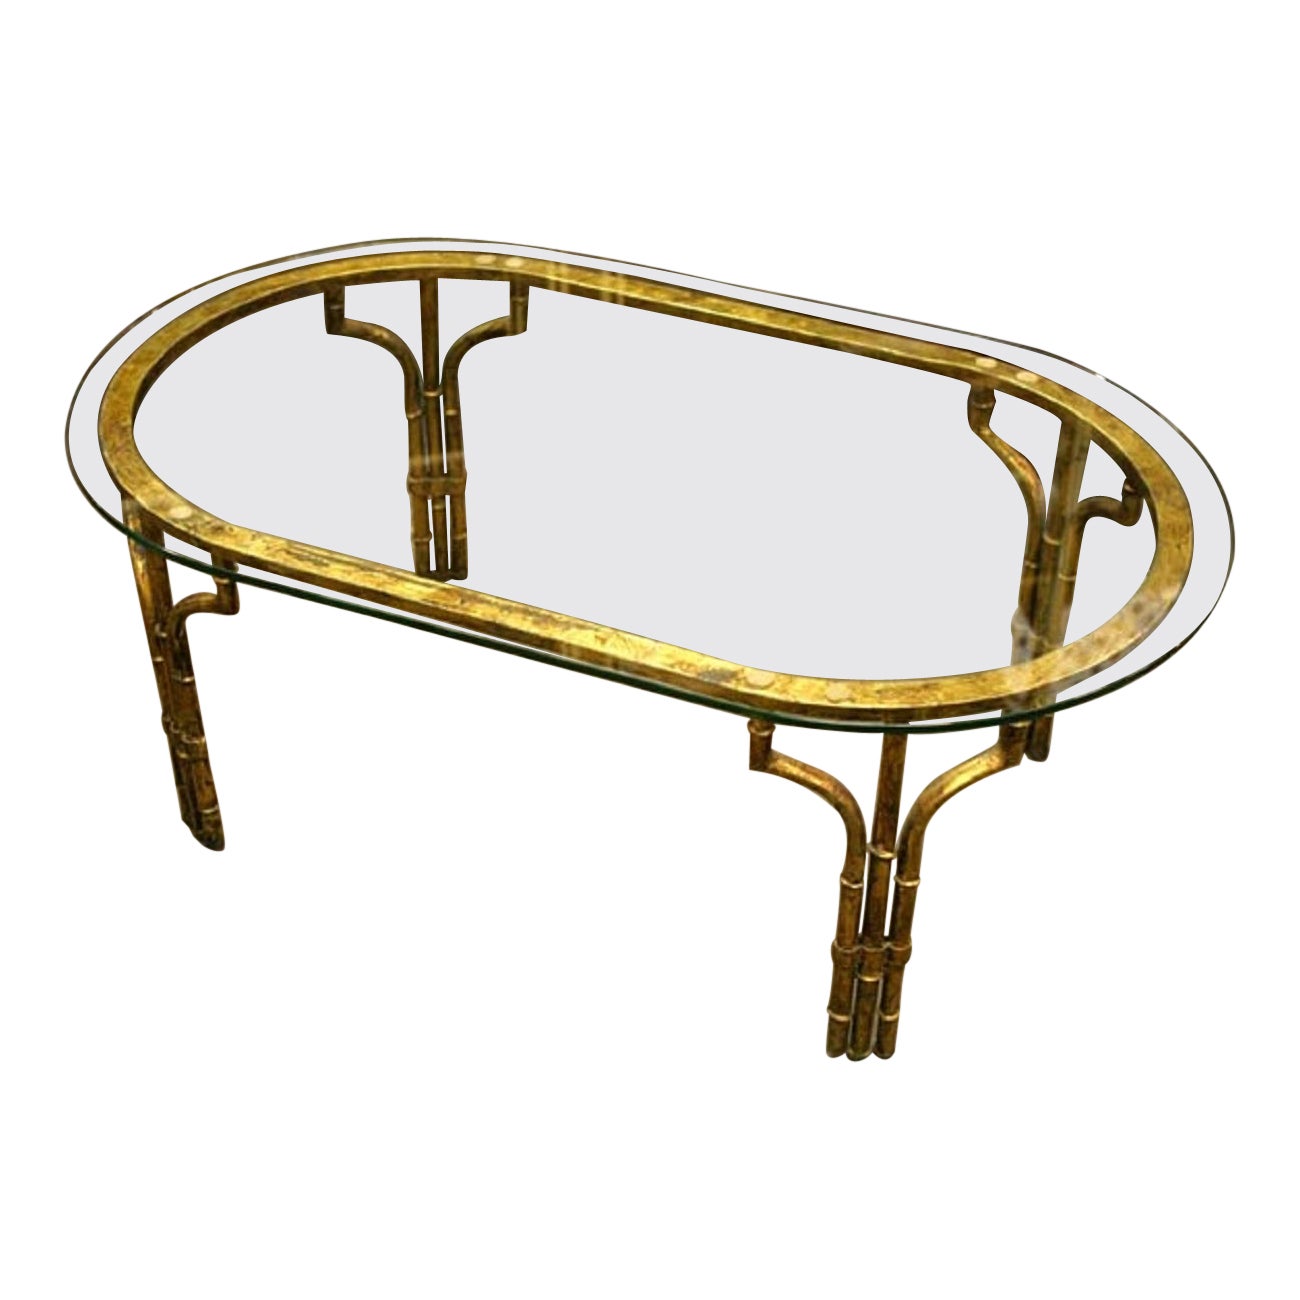  Table basse en fer doré et verre en faux bambou